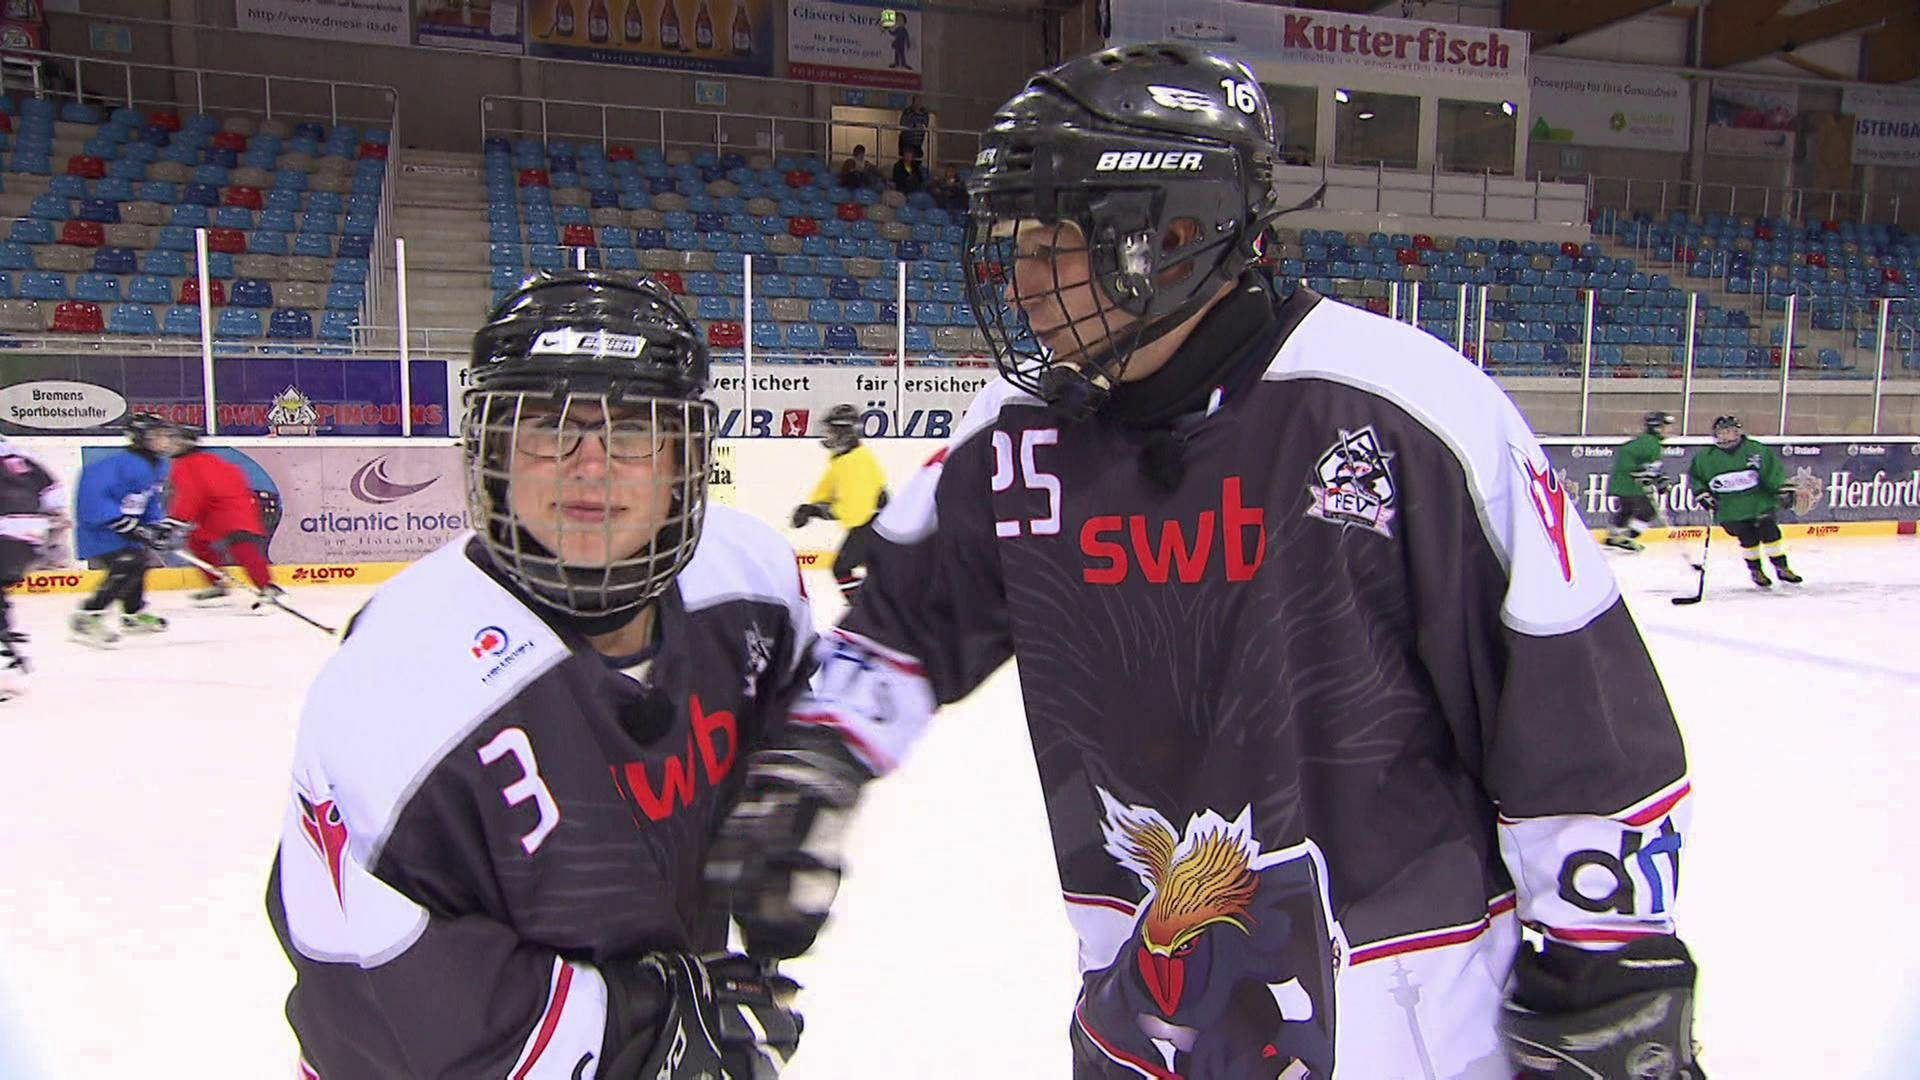 Zwei Personen stehen in Eishockeymontur in einer Eishalle.  (Foto: SWR / BR / WDR - Screenshot aus der Sendung)